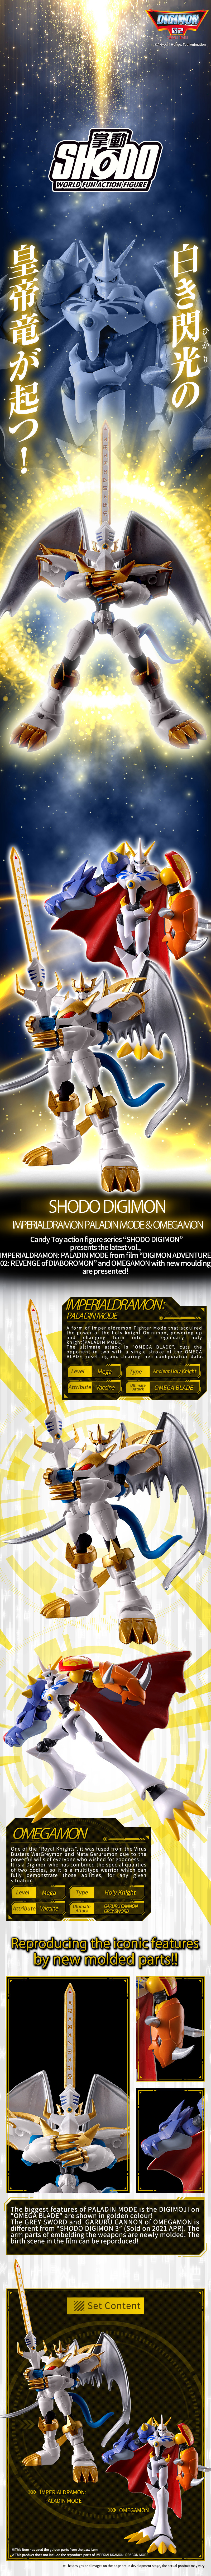 SHODO DIGIMON IMPERIALDRAMON PALADIN MODE & OMEGAMON